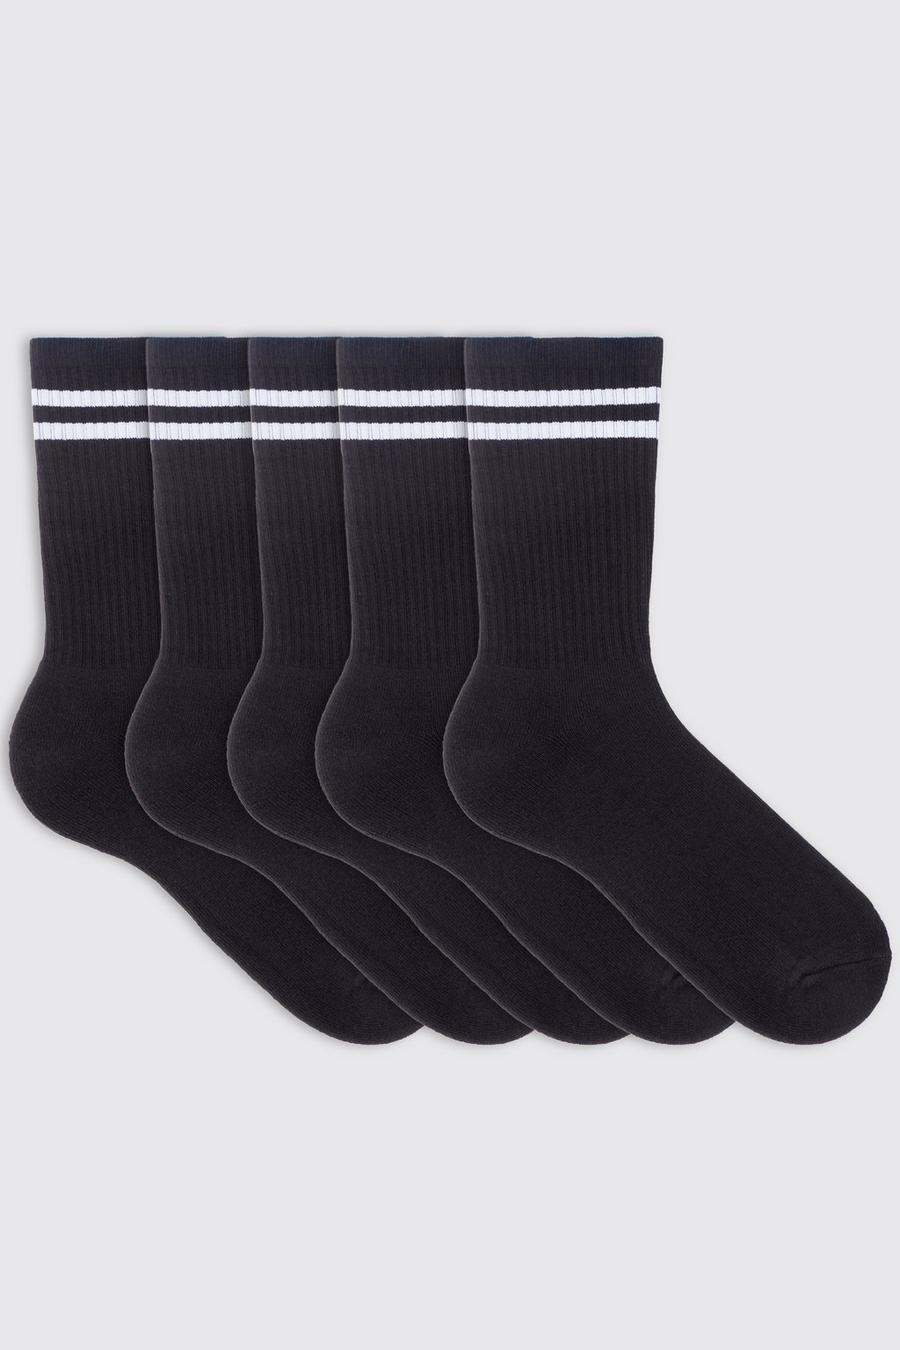 Pack de 5 pares de calcetines deportivos con rayas, Black